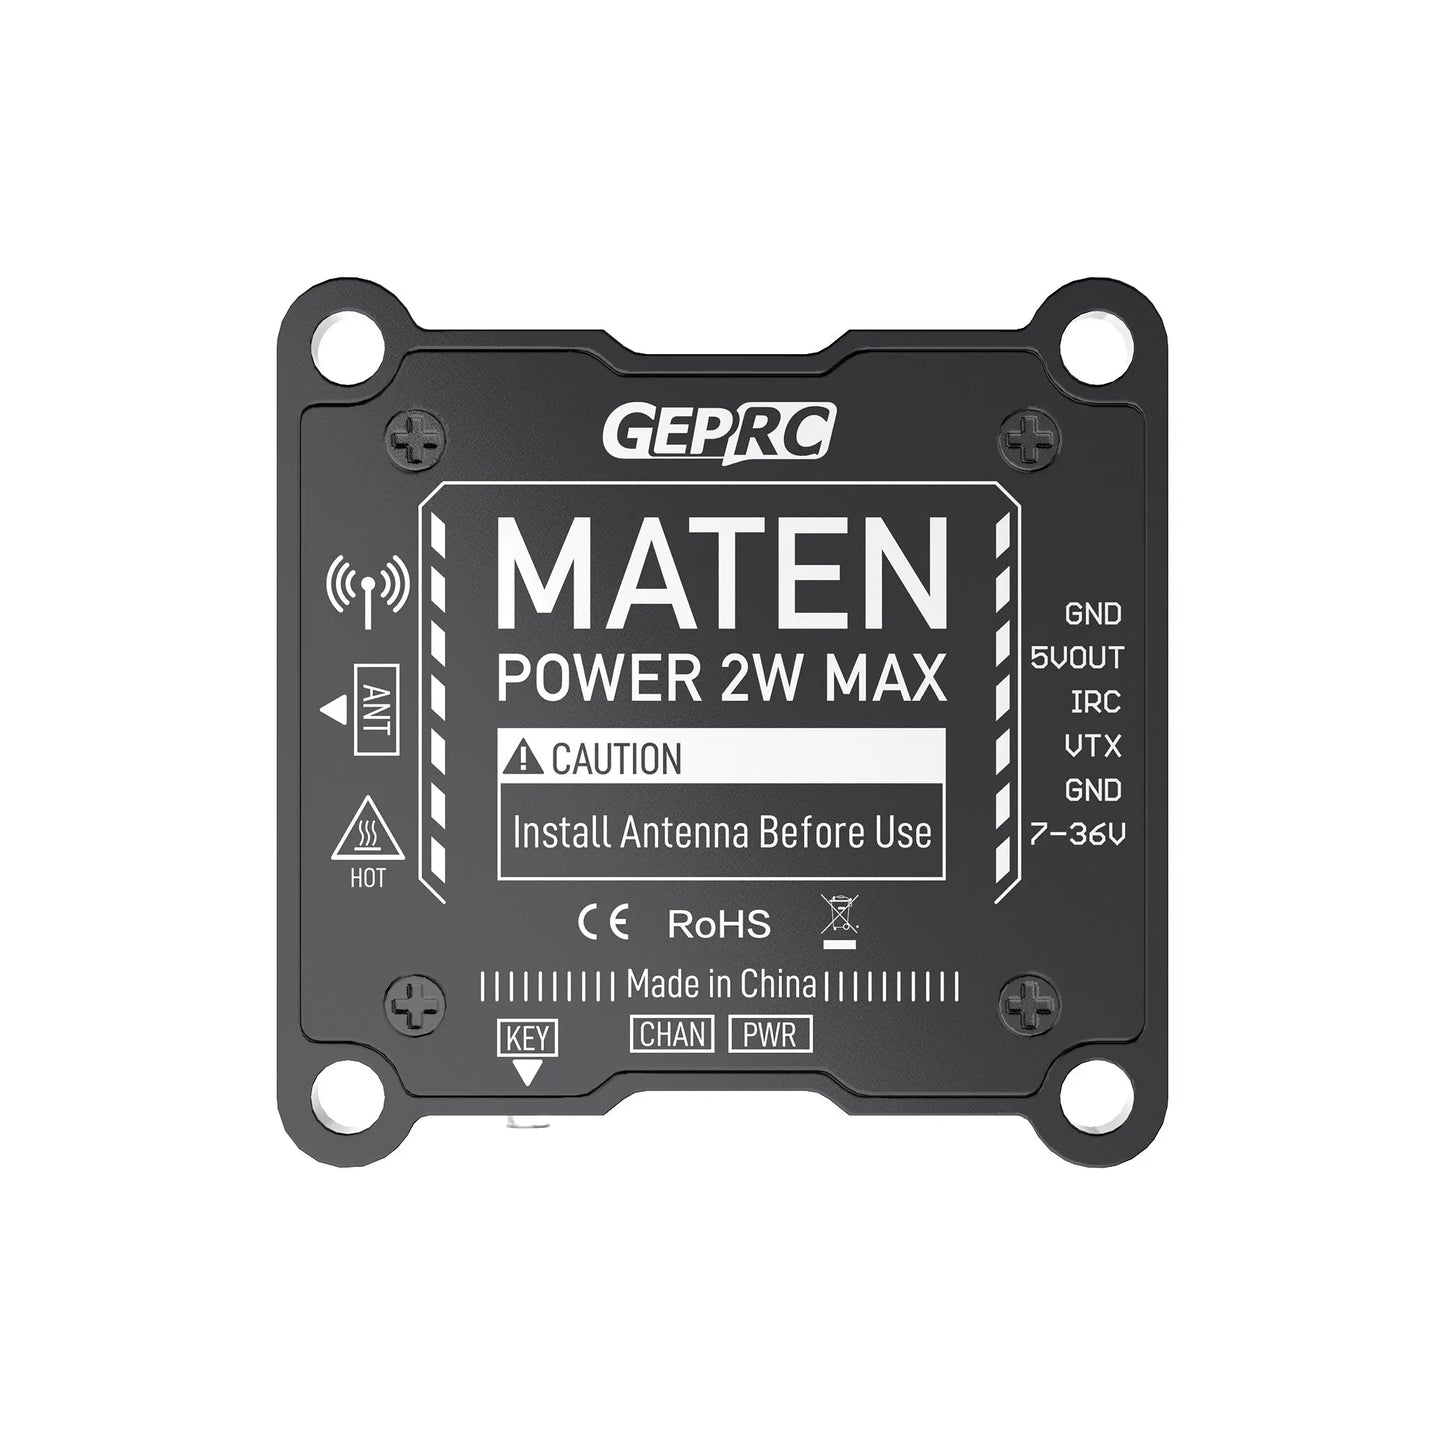 GEPRC MATEN 1.2G 2W VTX - 1080-1360MHZ/25-2000mW पिट 5V@600mA 14.5g FPV ड्रोन के लिए